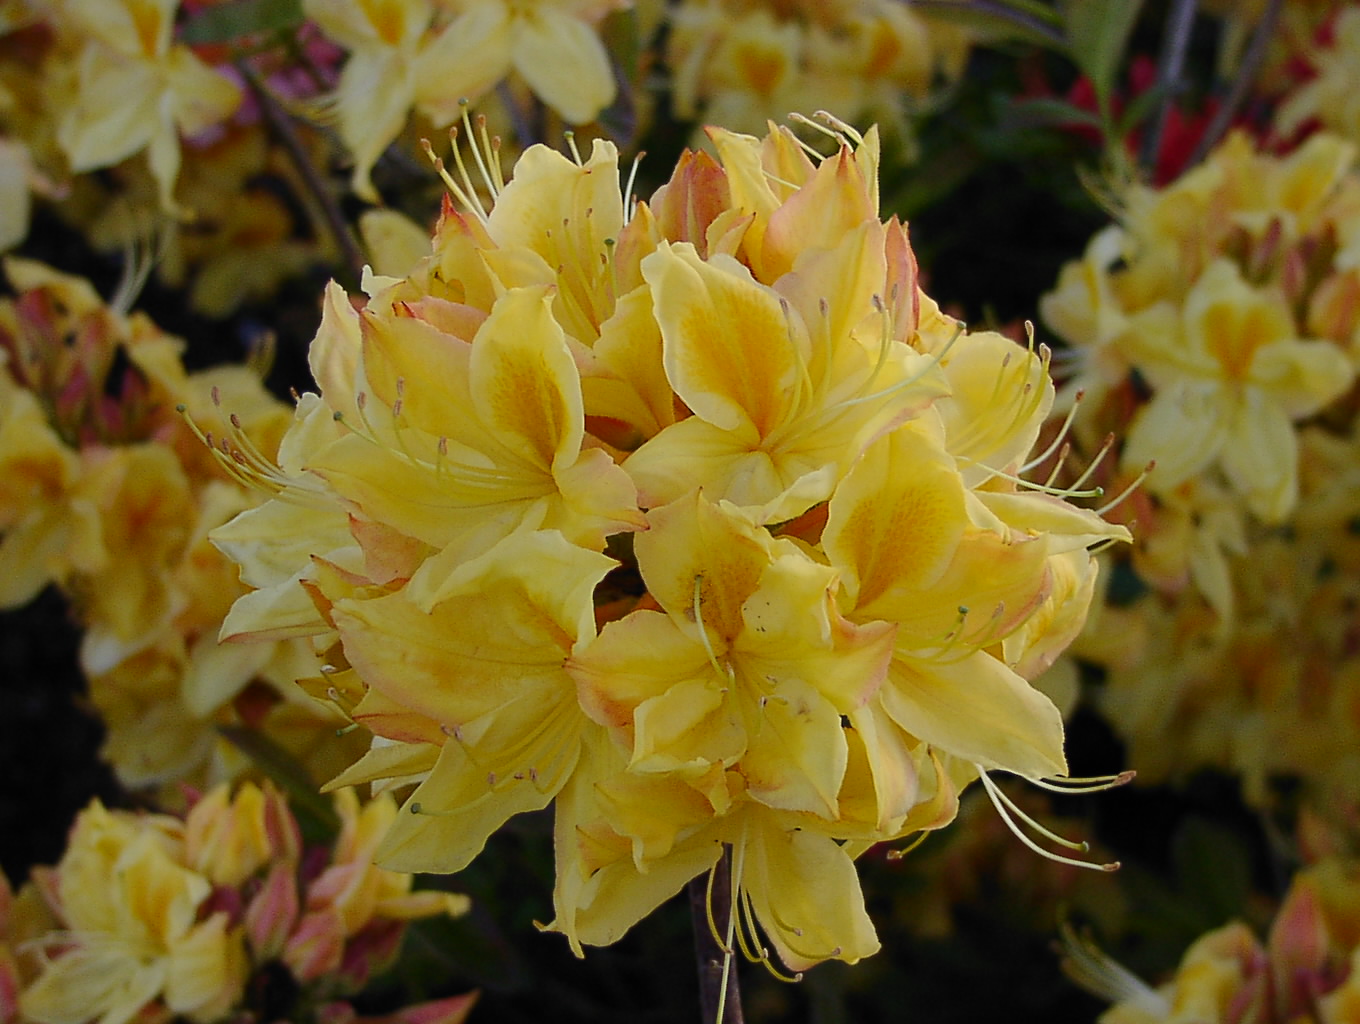 Die lebendigen gelben Blüten von Rhododendron Azalea 'Golden Sunset' bringen strahlende Schönheit in Ihren Garten und setzen sonnige Akzente.